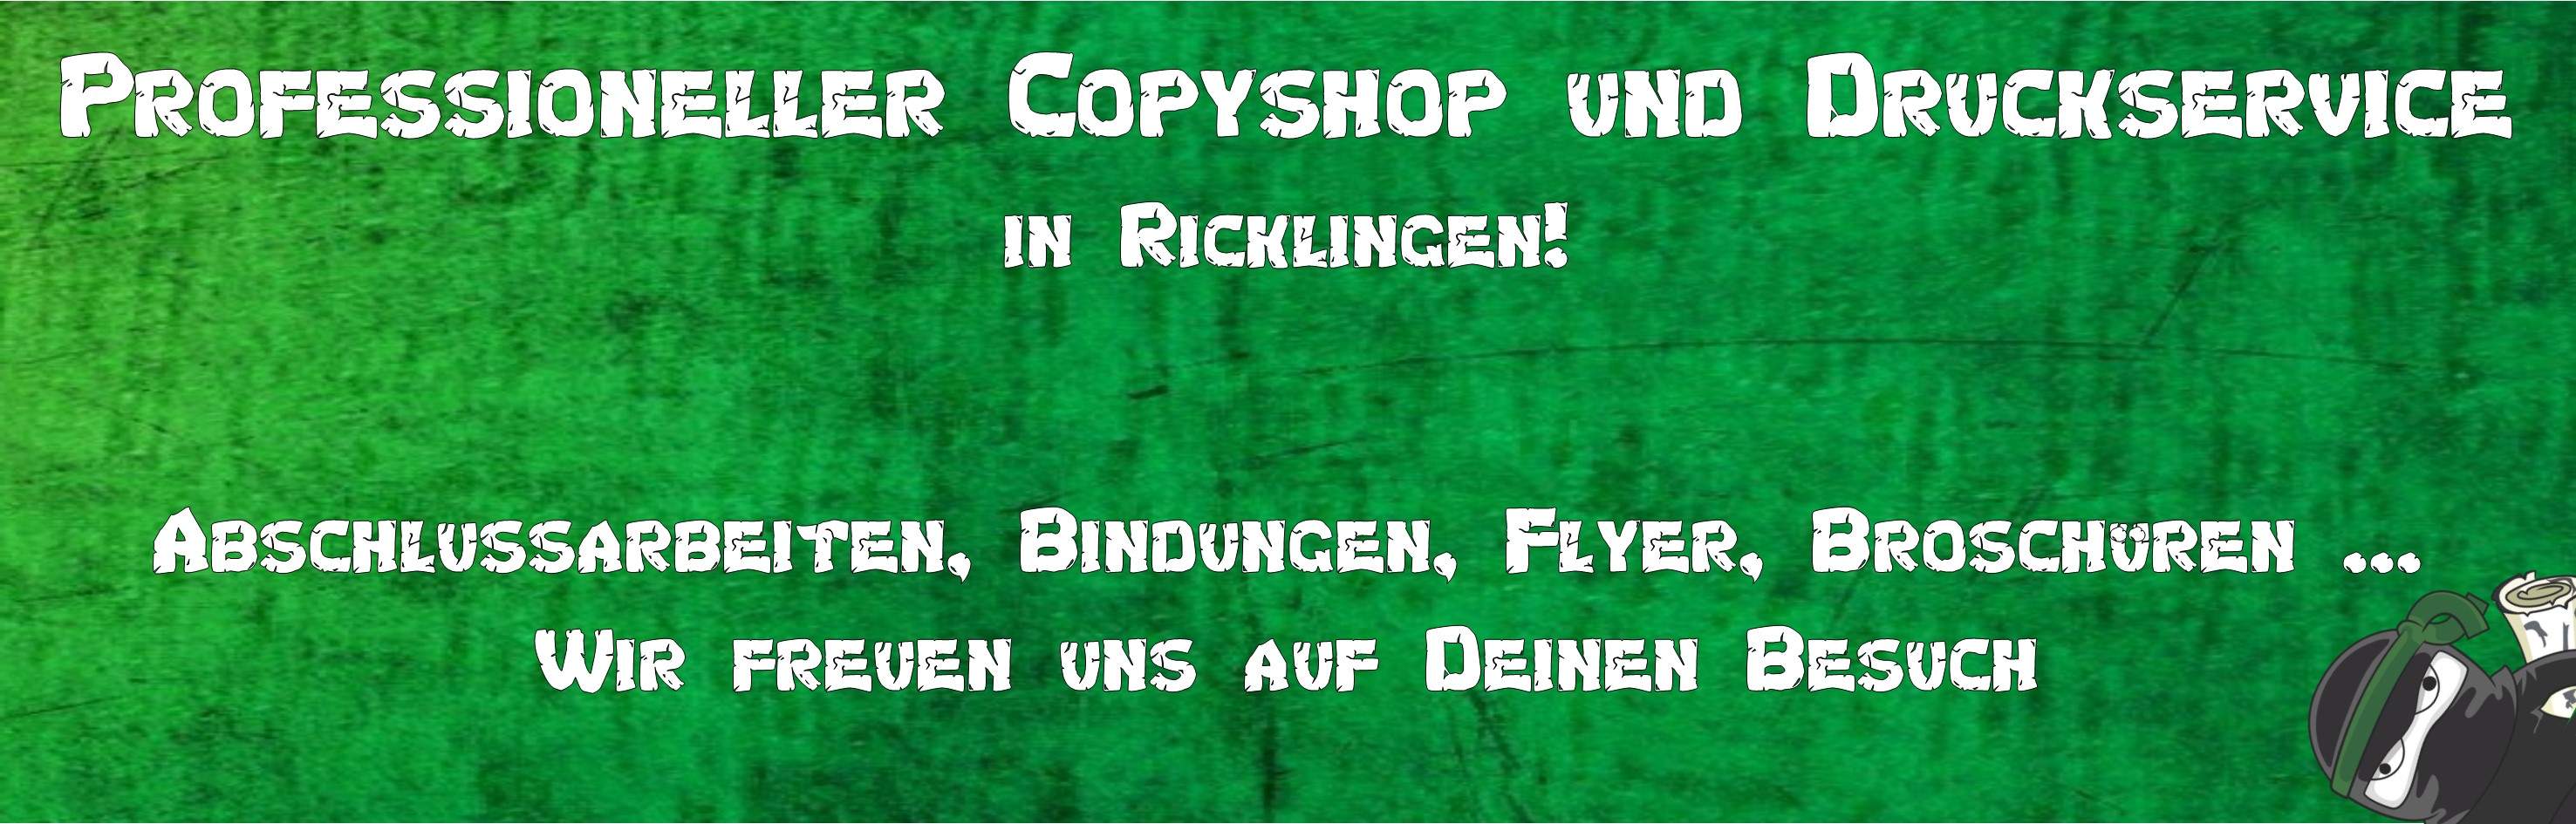 Professioneller Copyshop und Druckservice in Ricklingen!
								 Abschlussarbeiten, Bindungen, Flyer, Broschüren...Wir freuen uns auf Deinen Besuch